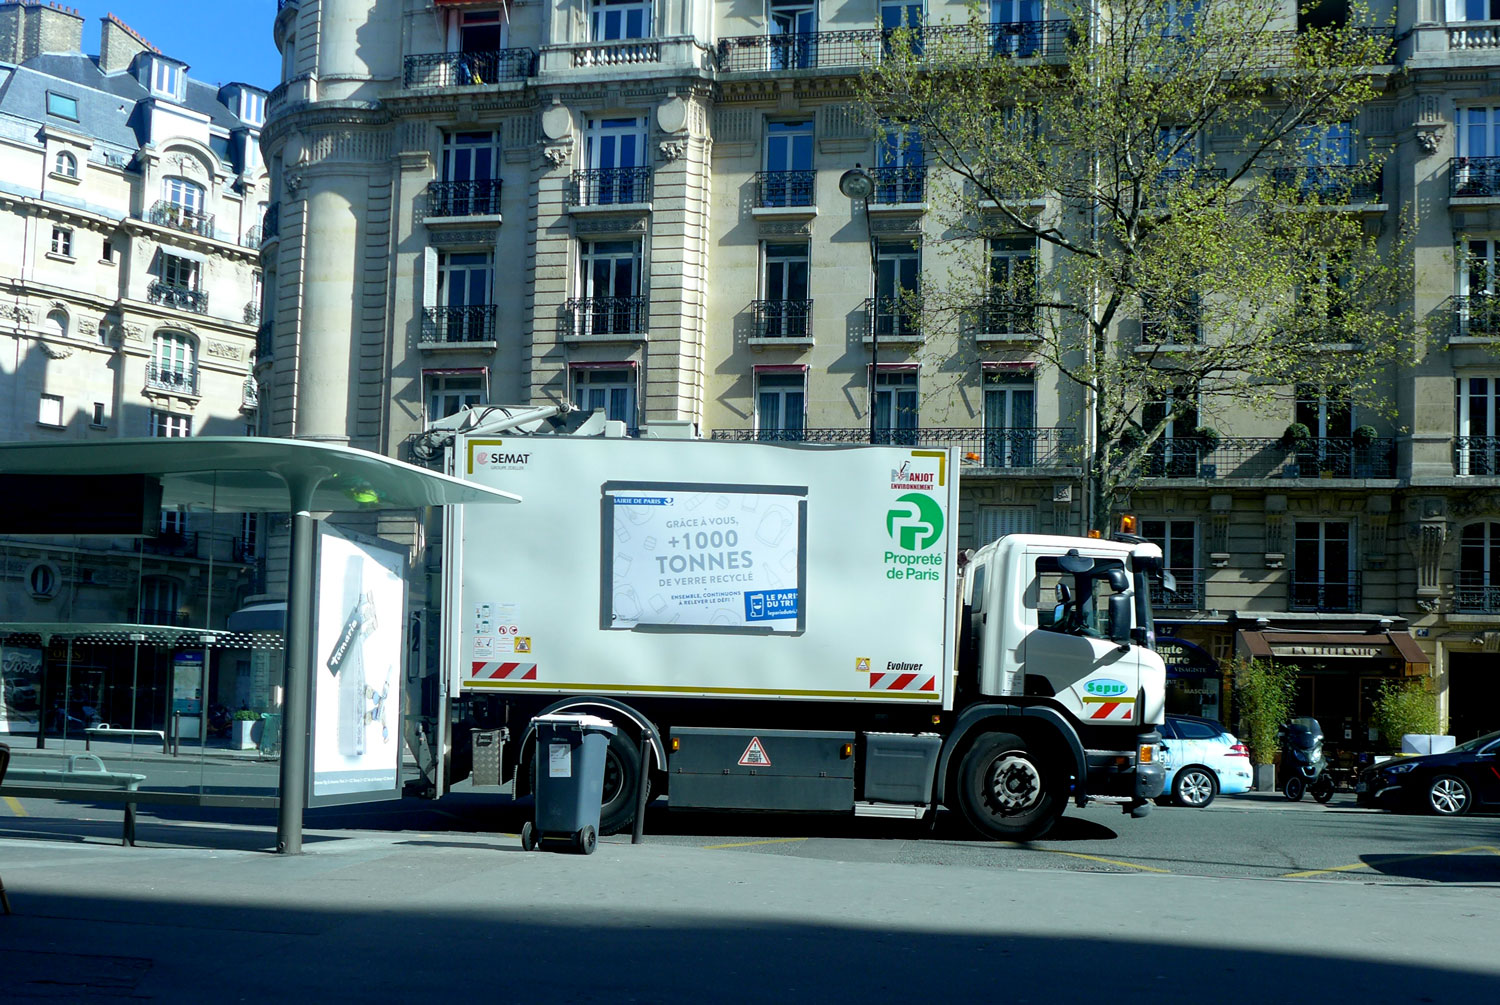 La mairie de Paris profite des camions des éboueurs pour encourager au recyclage.